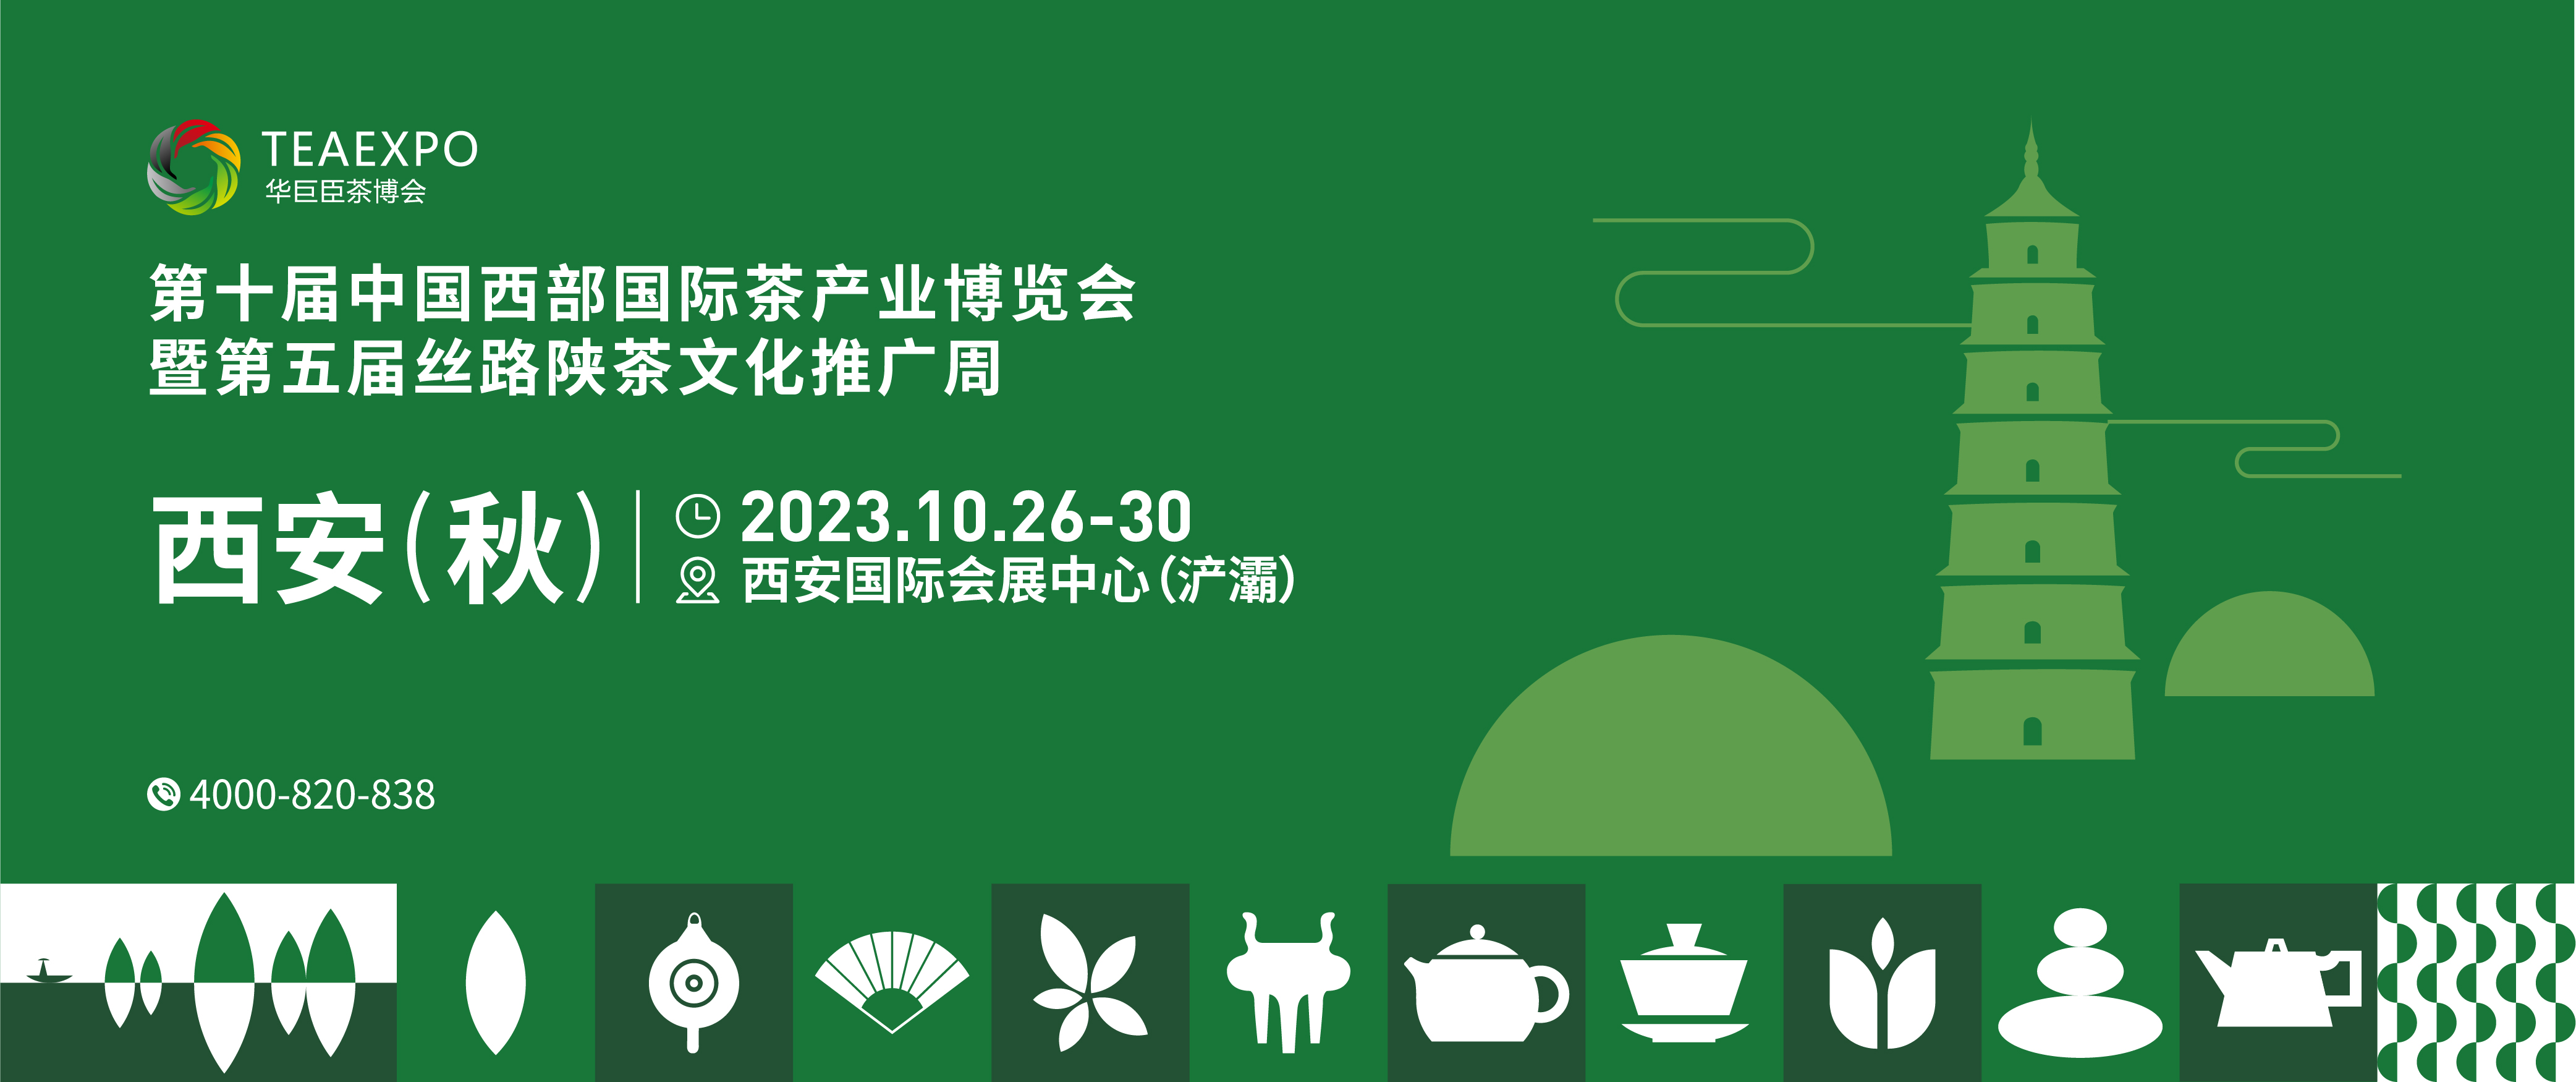 第十届中国西部国际茶产业博览会暨第五届丝路陕茶文化推广周